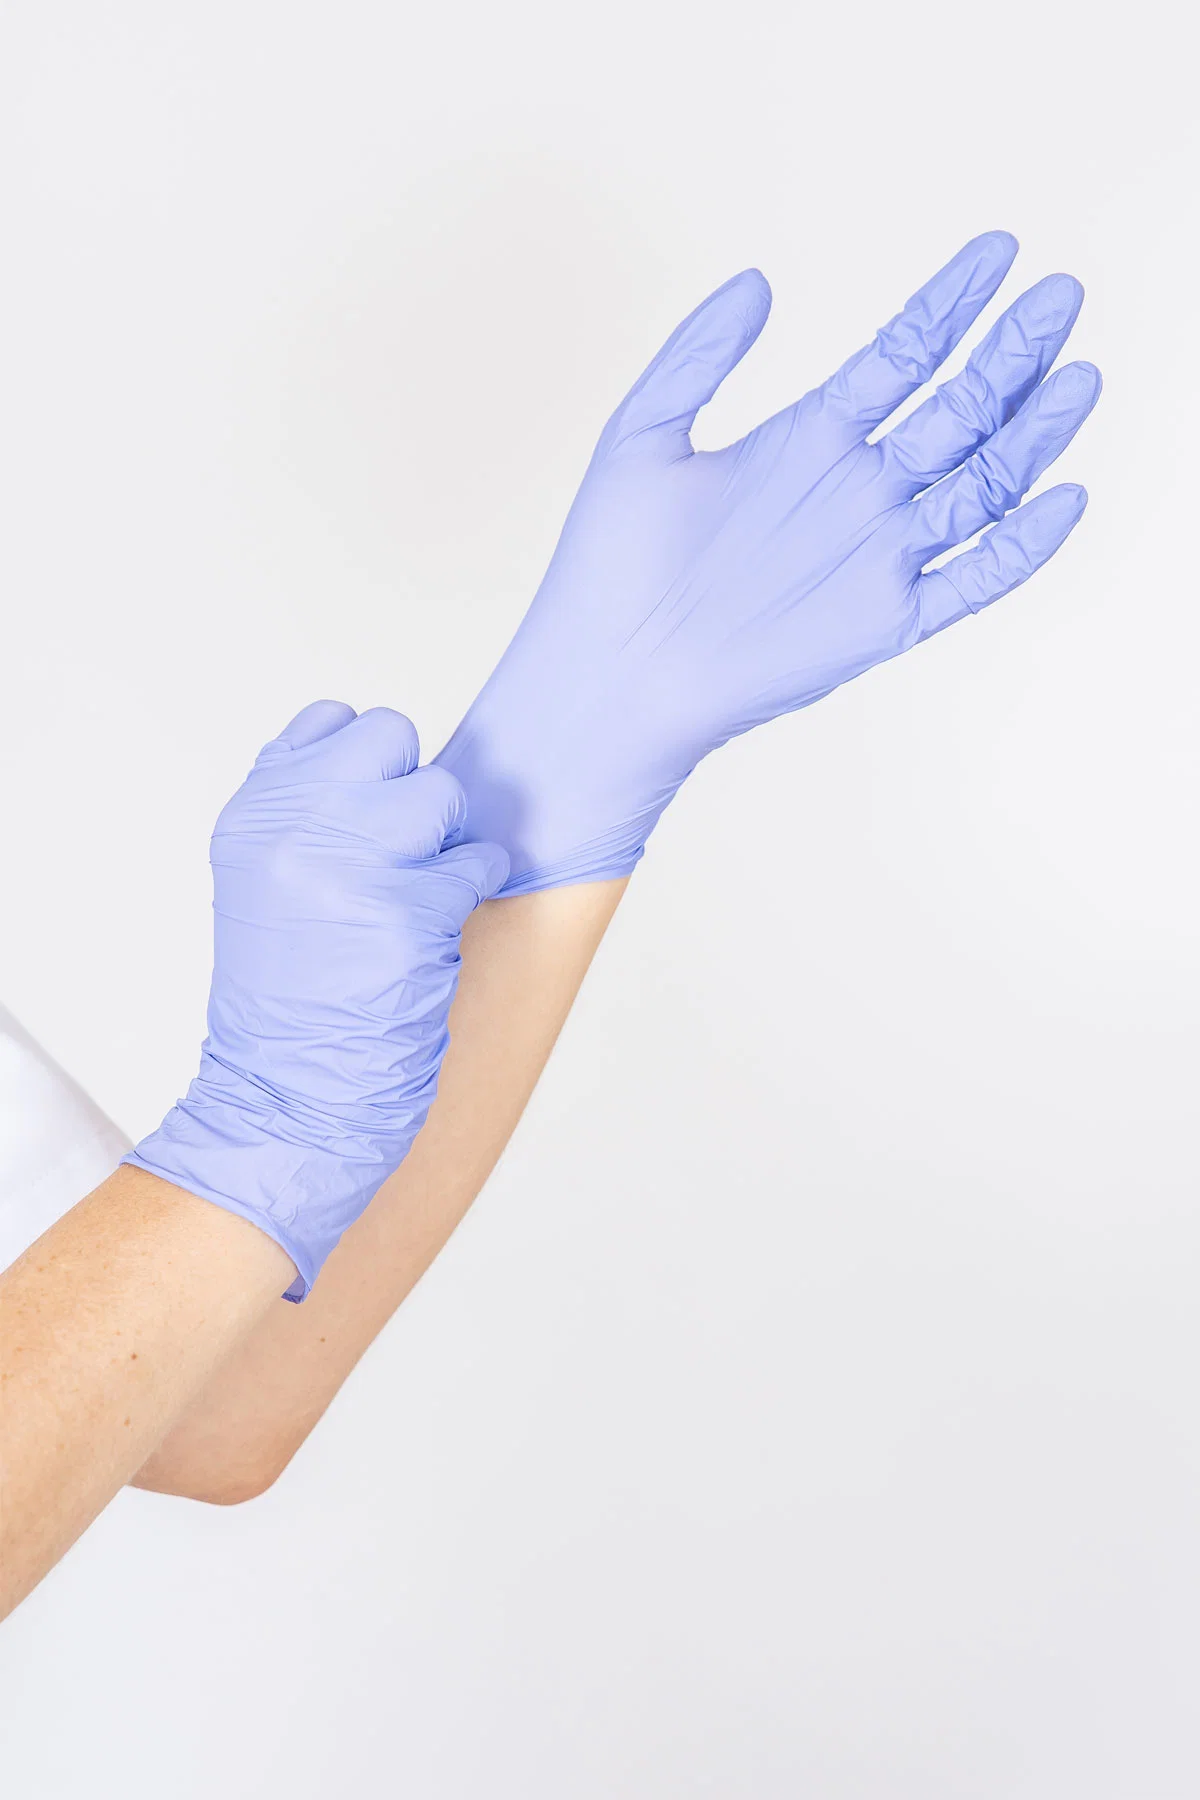 Siny Горячая продажа одноразовая медицинская поставка гладкая Pockмаркированные стерильные хирургические Клиника Парамедийные перчатки